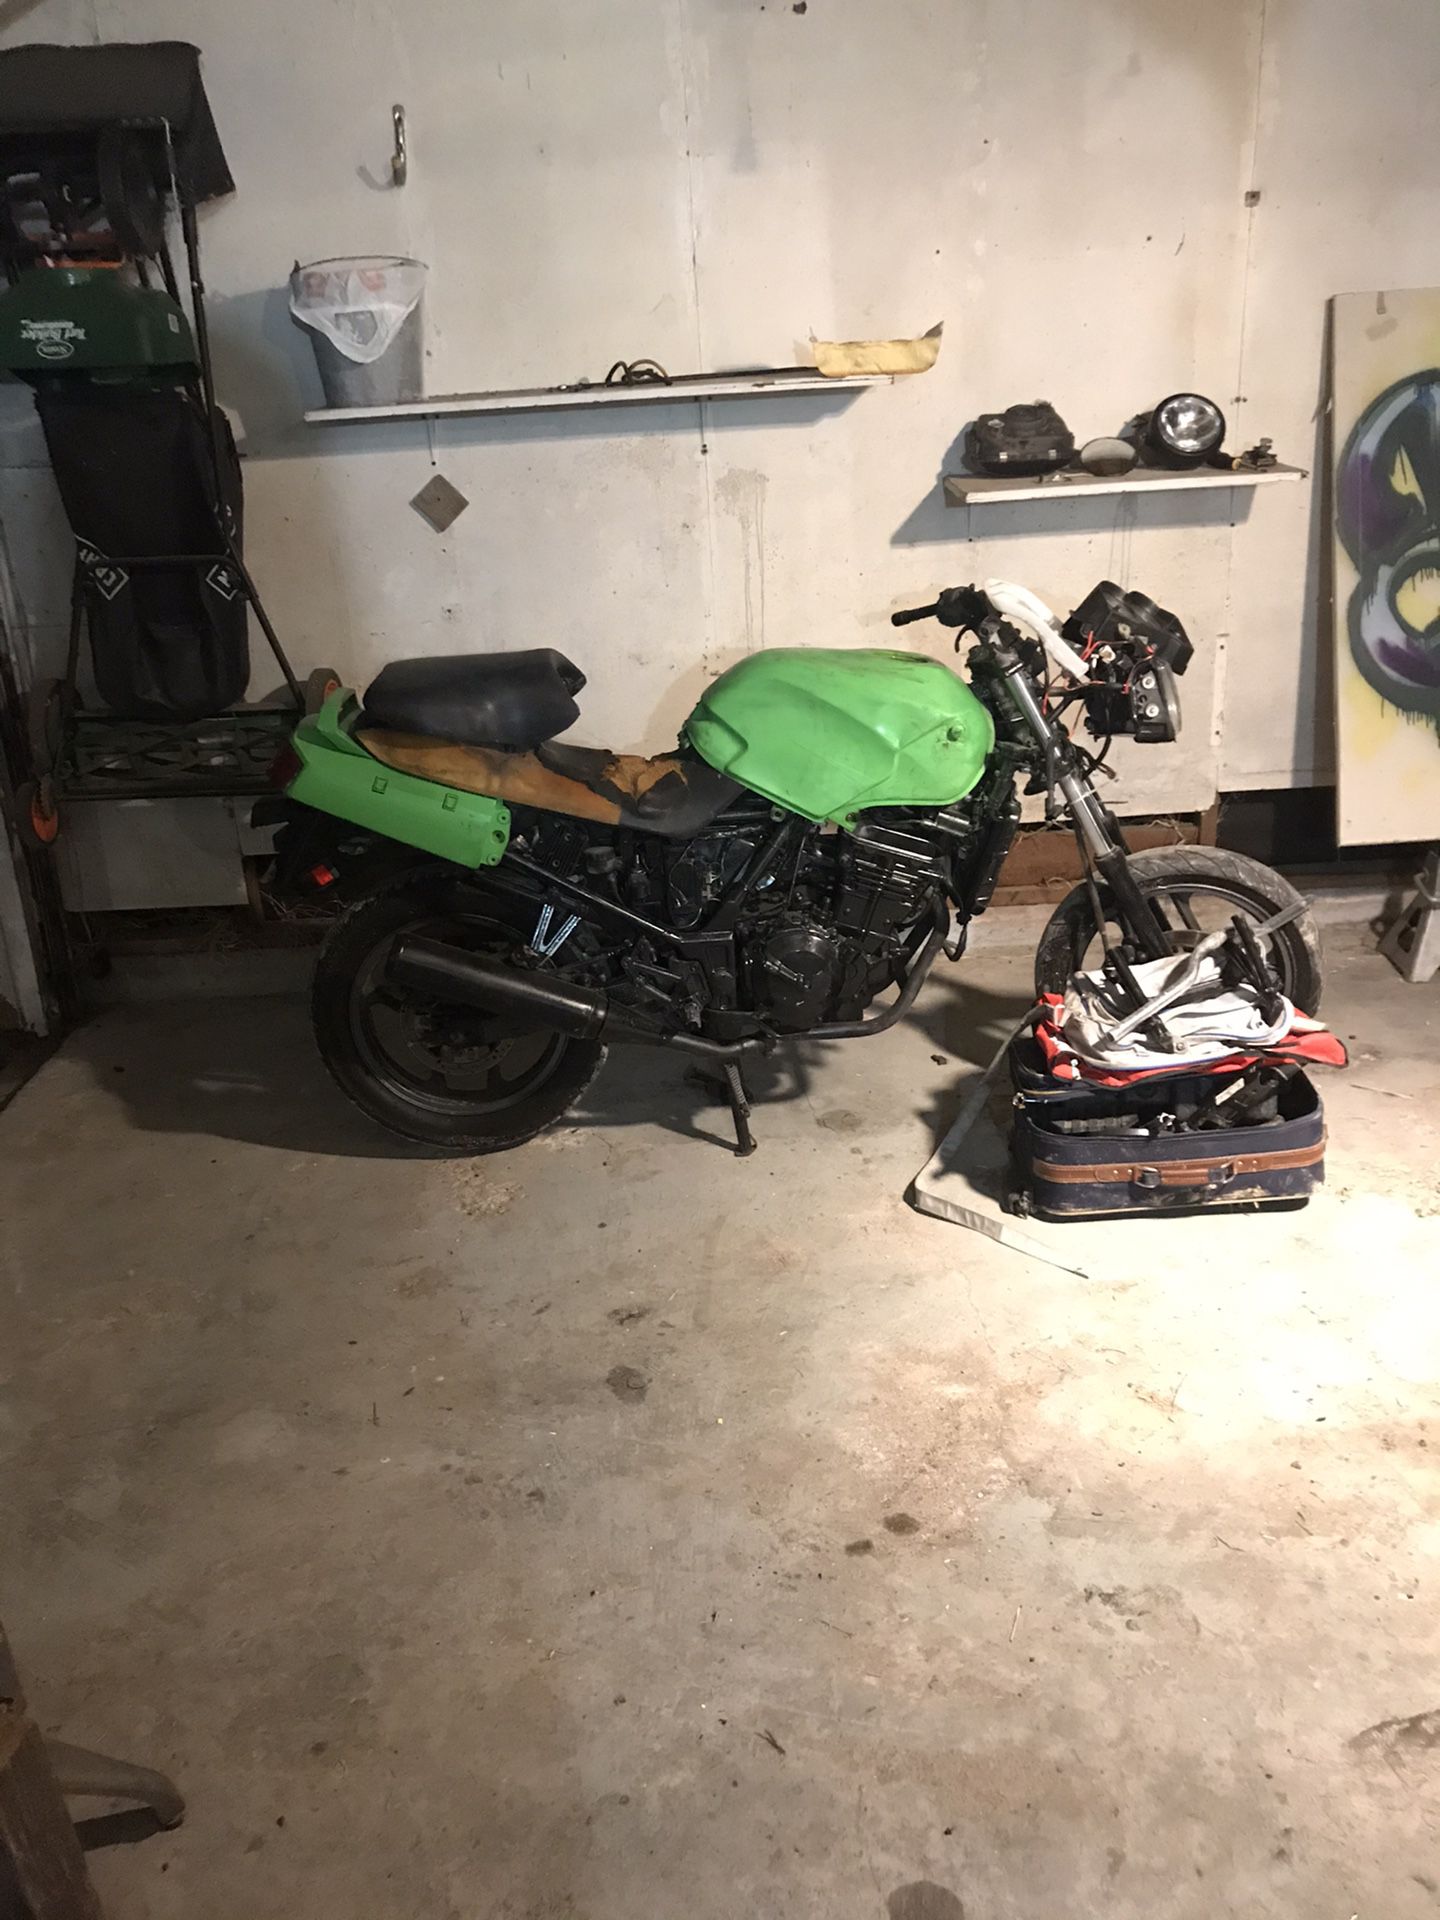 Kawasaki Ninja 250 parts bike (lots of good parts)